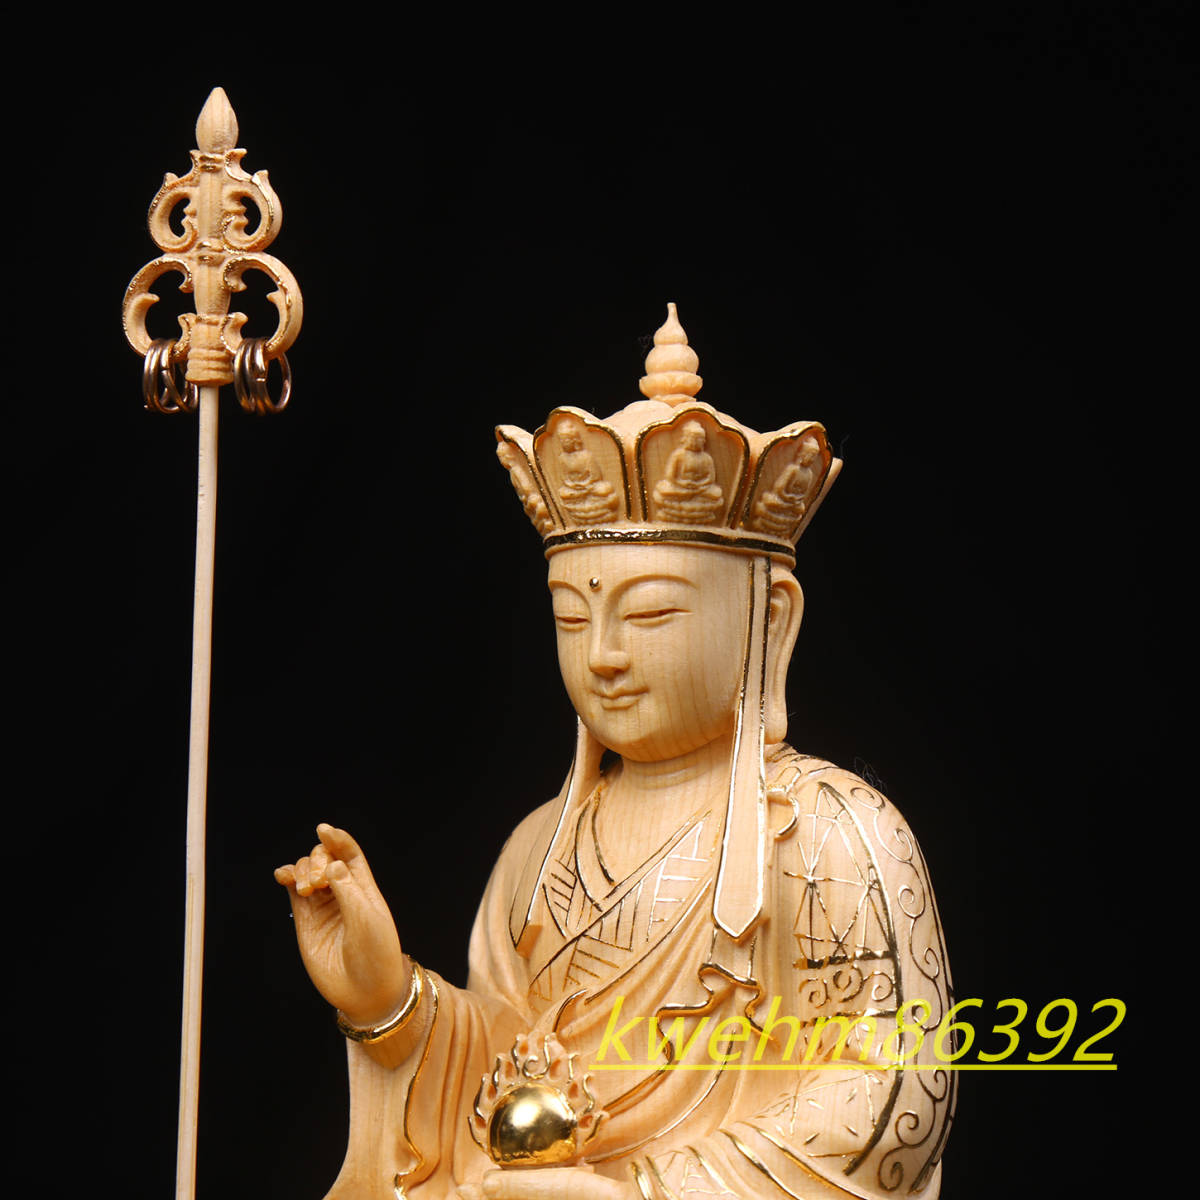 珍品 木彫仏像 地蔵菩薩立像 地蔵菩薩 地蔵菩薩像 本金 切金 彫刻